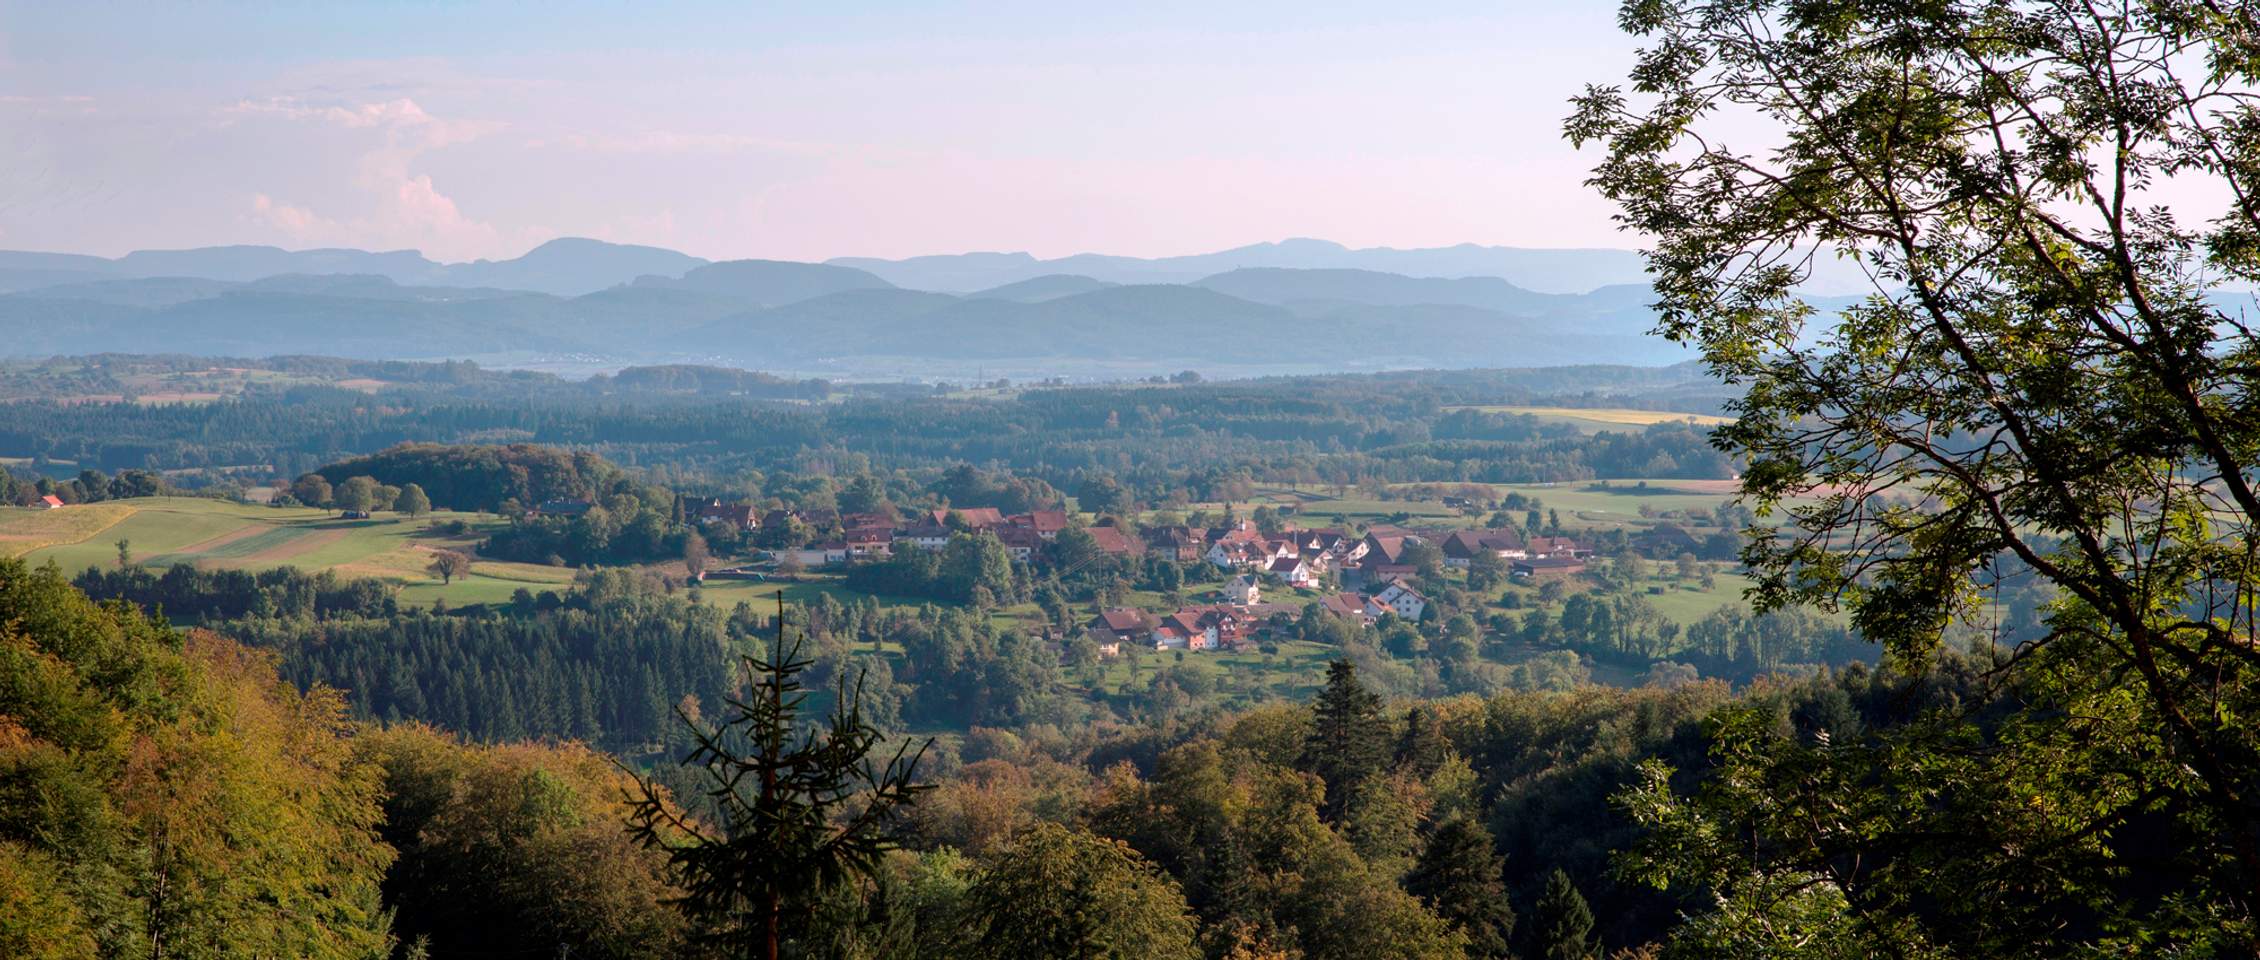 Schopfheim im Dreiländereck Schweiz-Frankreich-Deutschland: Wandern und Genießen